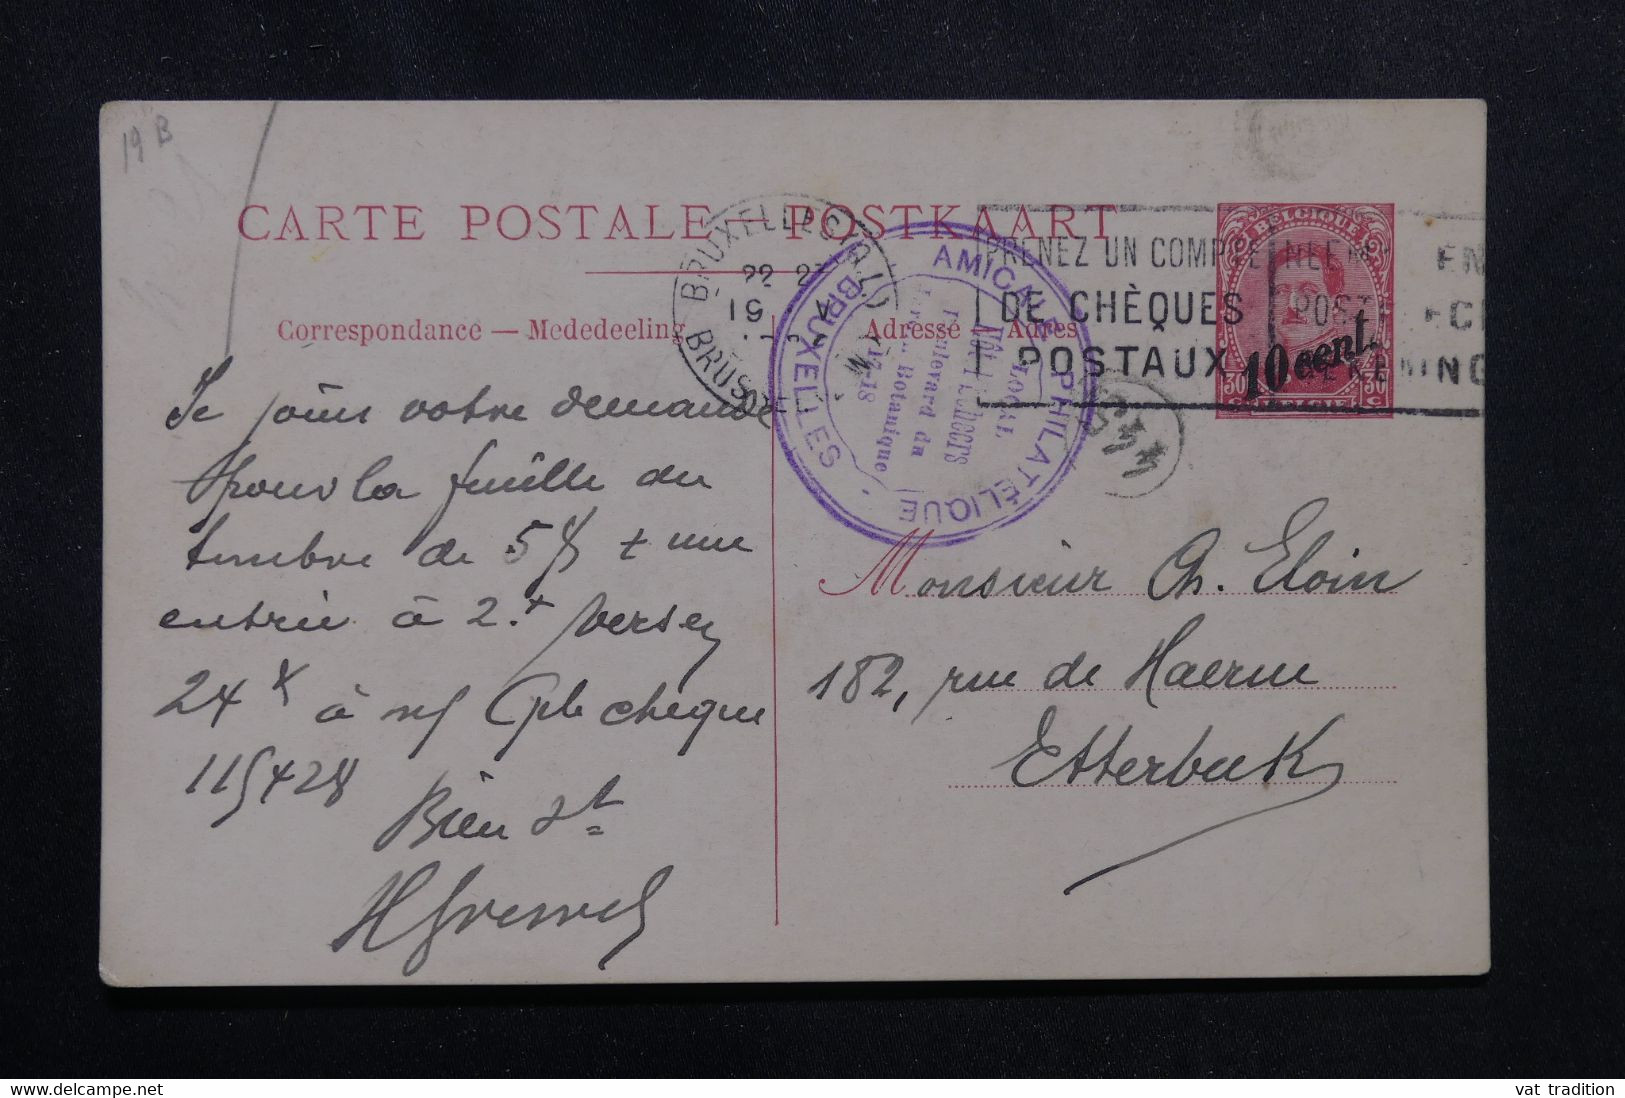 BELGIQUE - Entier Postal ( Illustré Paquebot ) Surchargé De Bruxelles  - L 72301 - Liner Cards